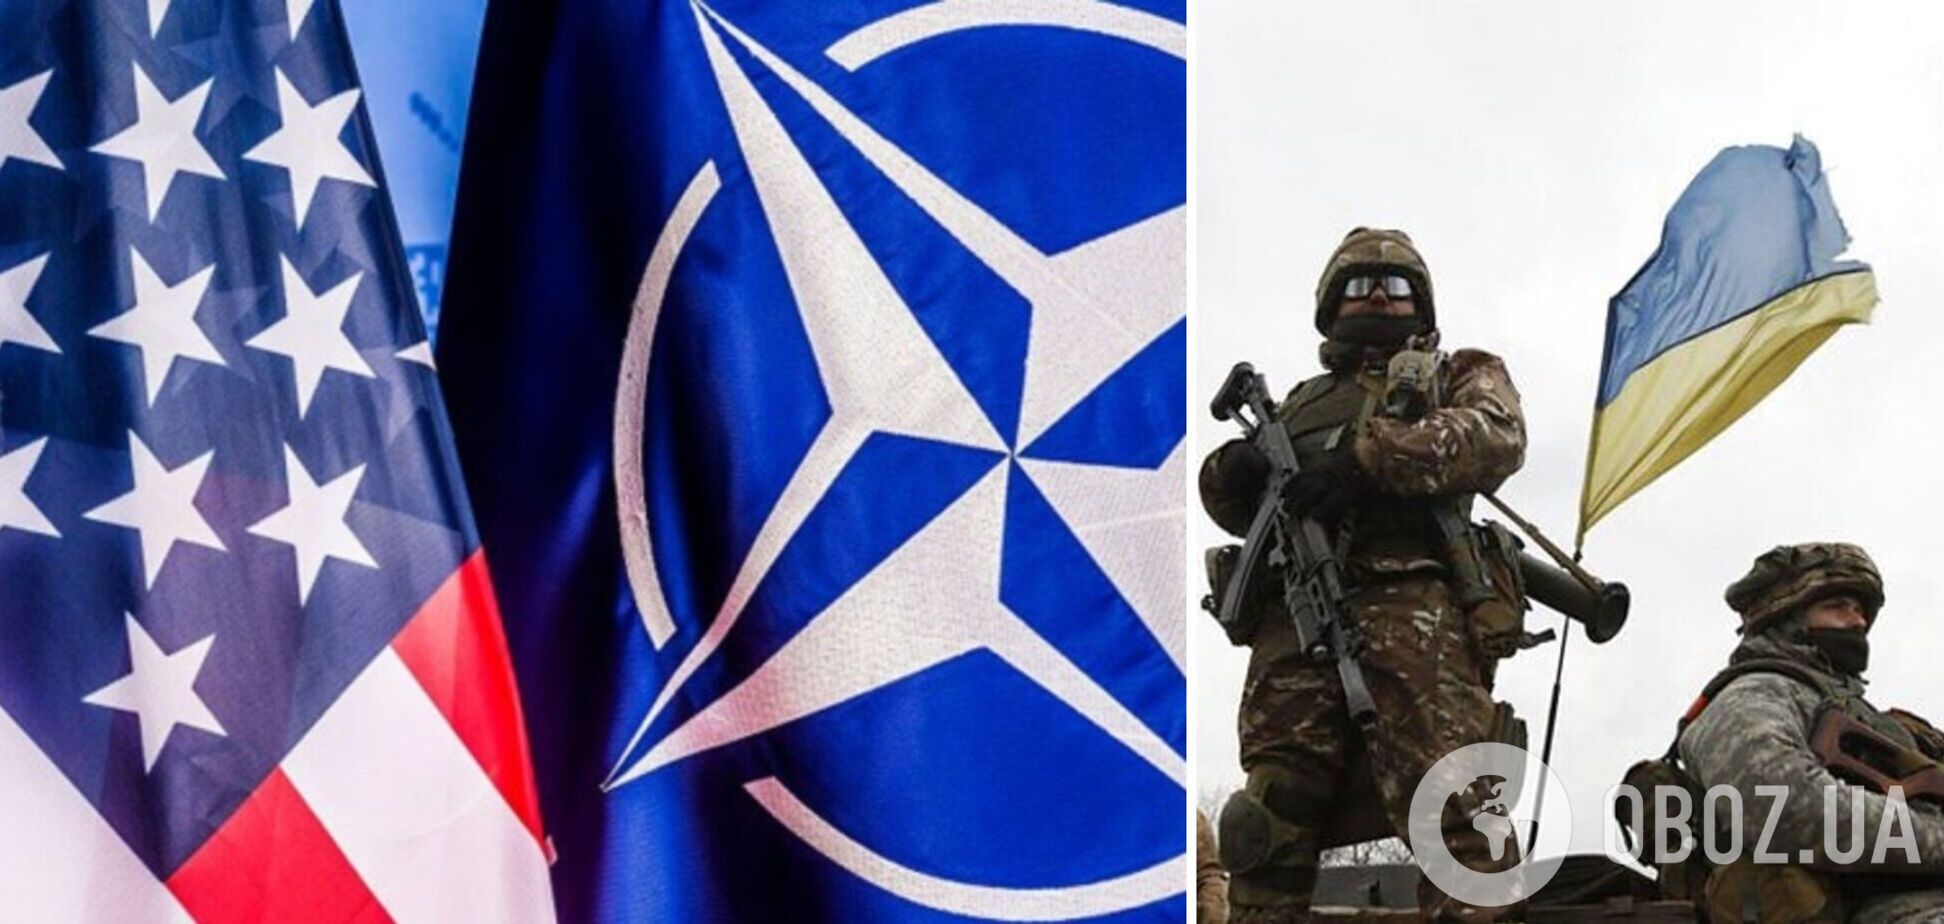 Міністри оборони західних країн проведуть переговори щодо підтримки України